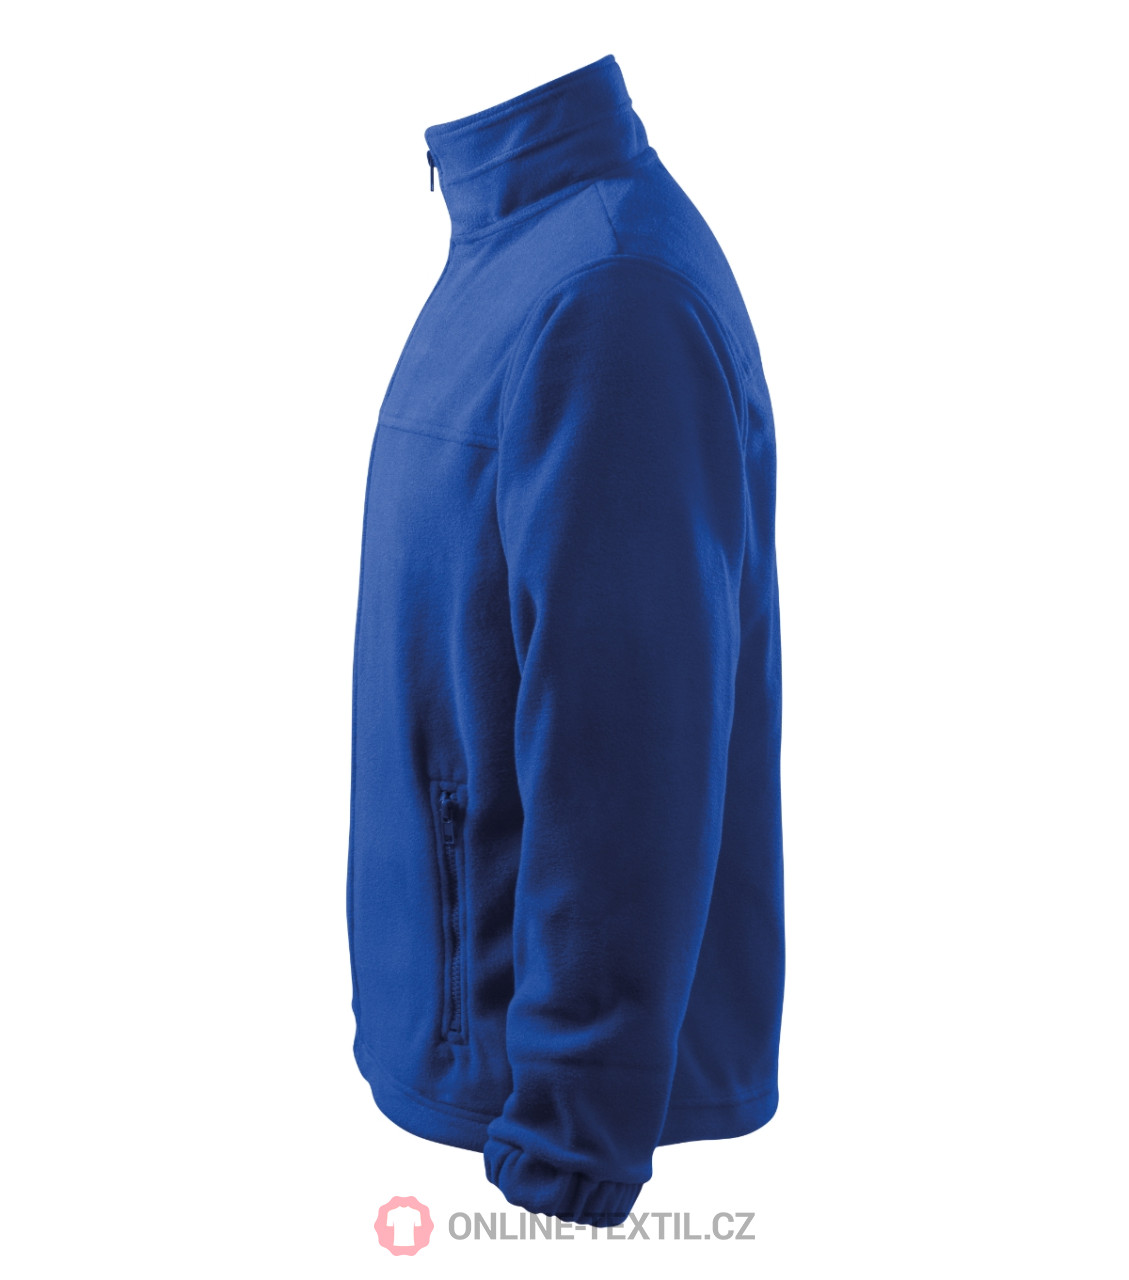 DressInn Men Clothing Jackets Fleece Jackets Jacket 3g13677 Fleece Blue 4XL Man 